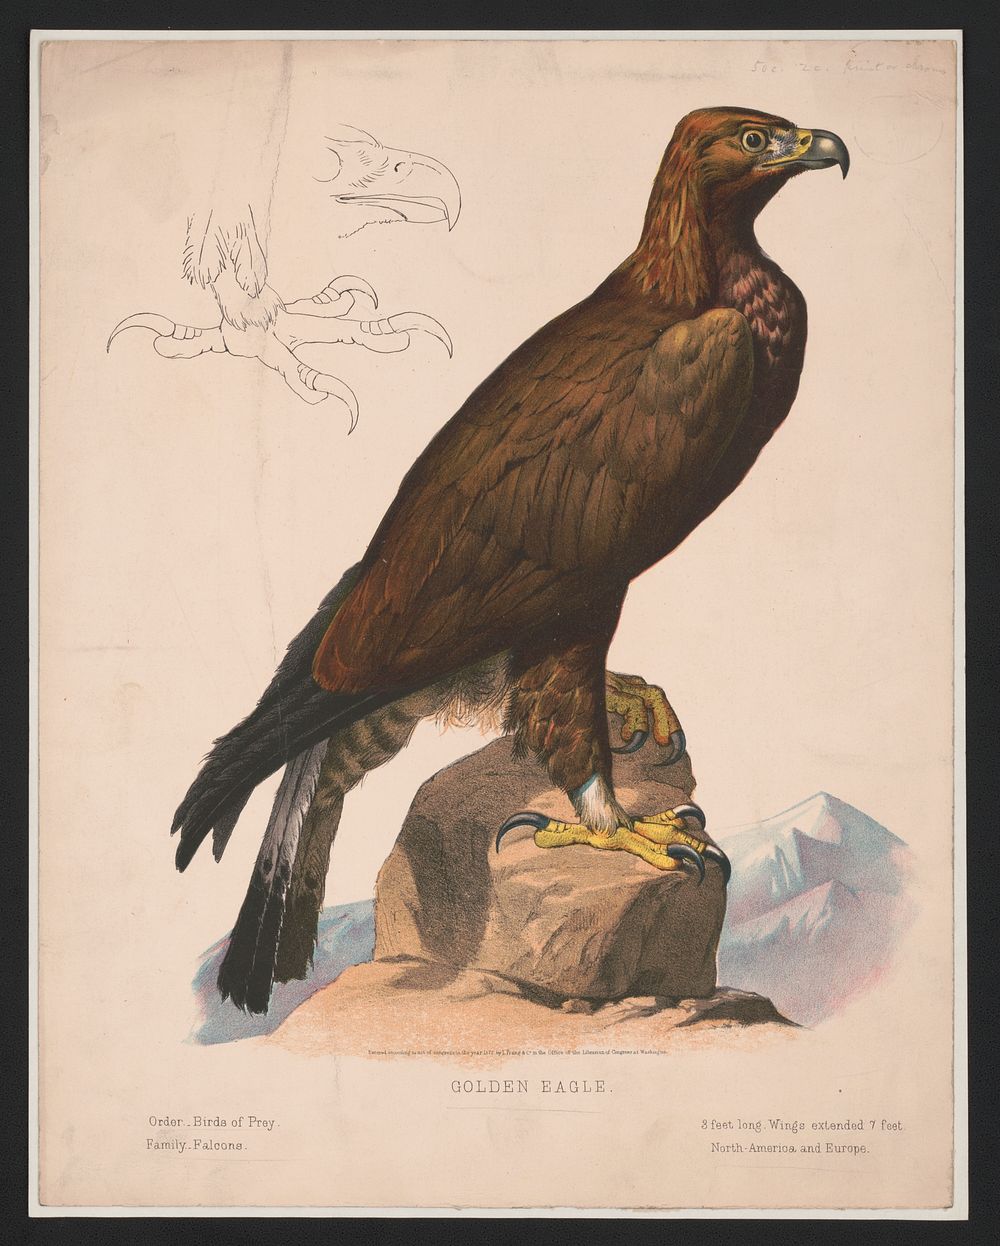 Golden eagle, L. Prang & Co., publisher